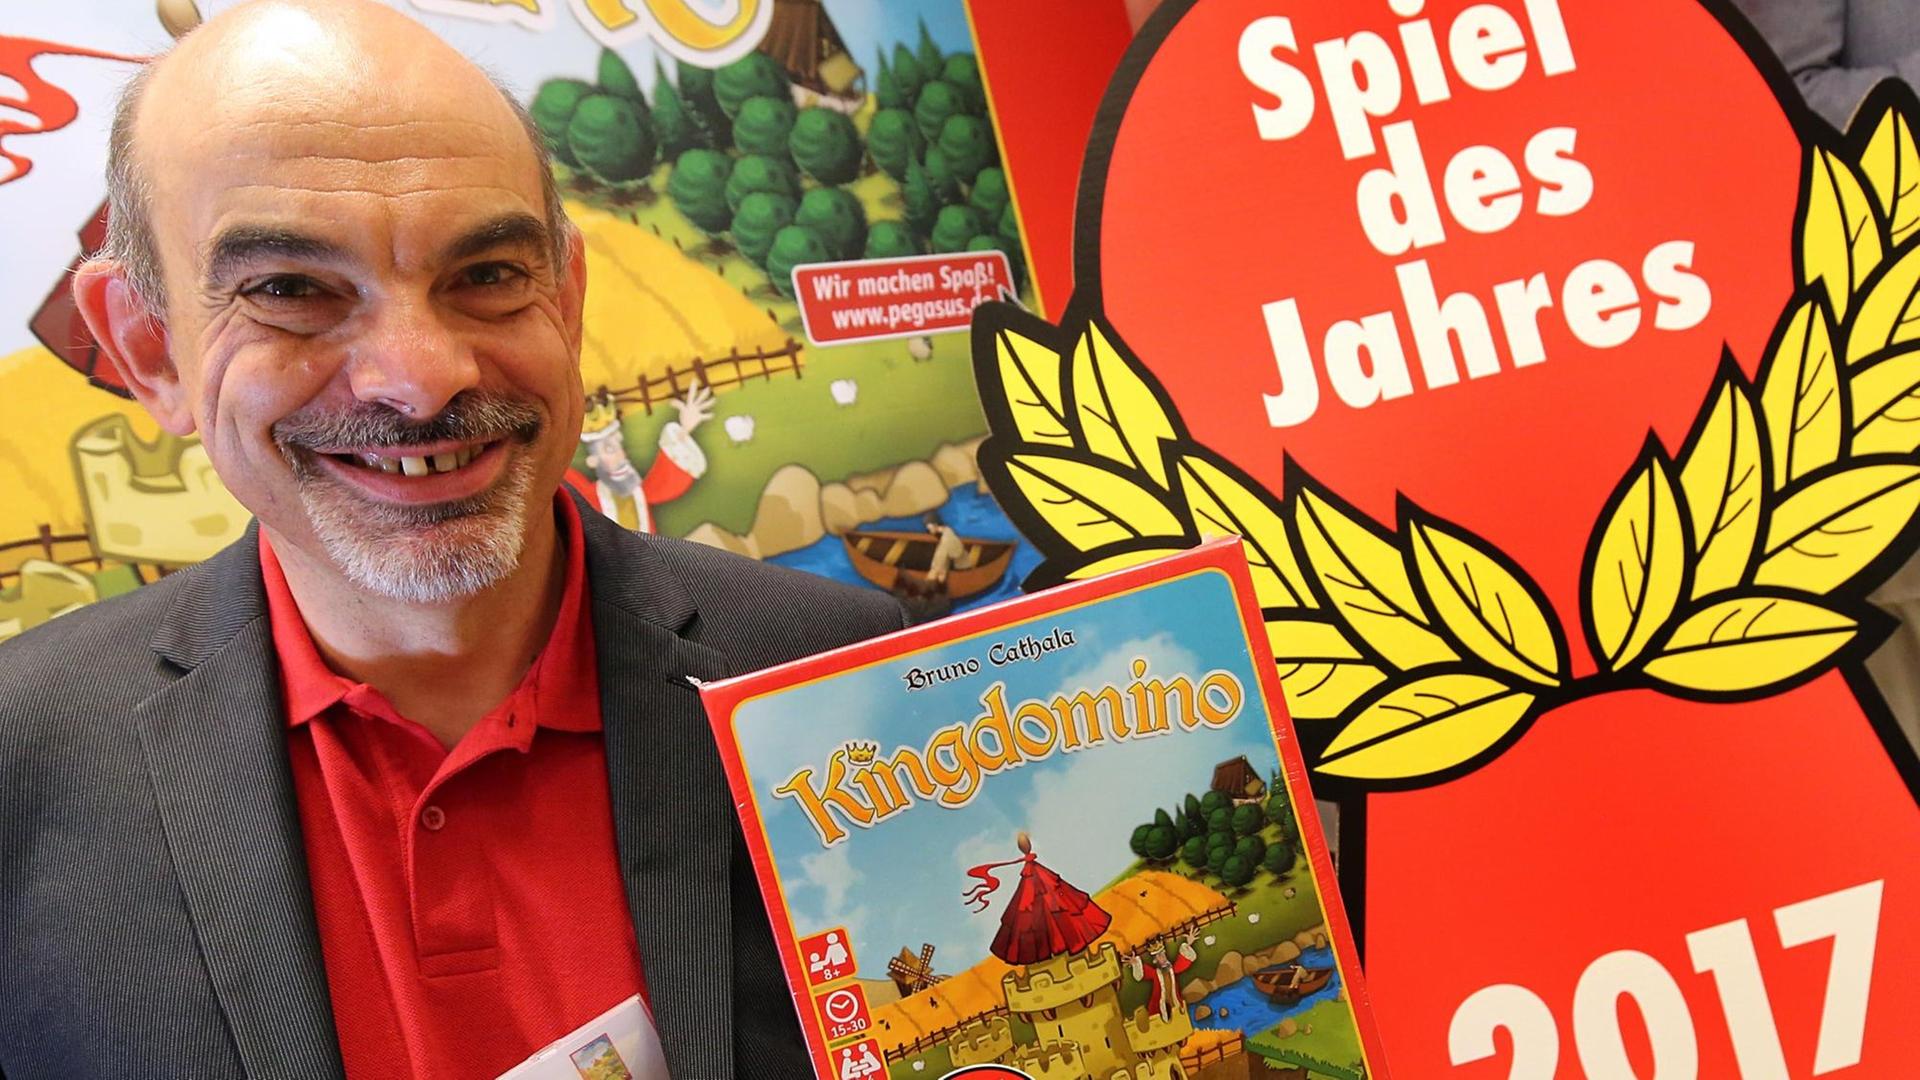 Der Spieleautor Bruno Cathala mit seinem Spiel "Kingdomino"